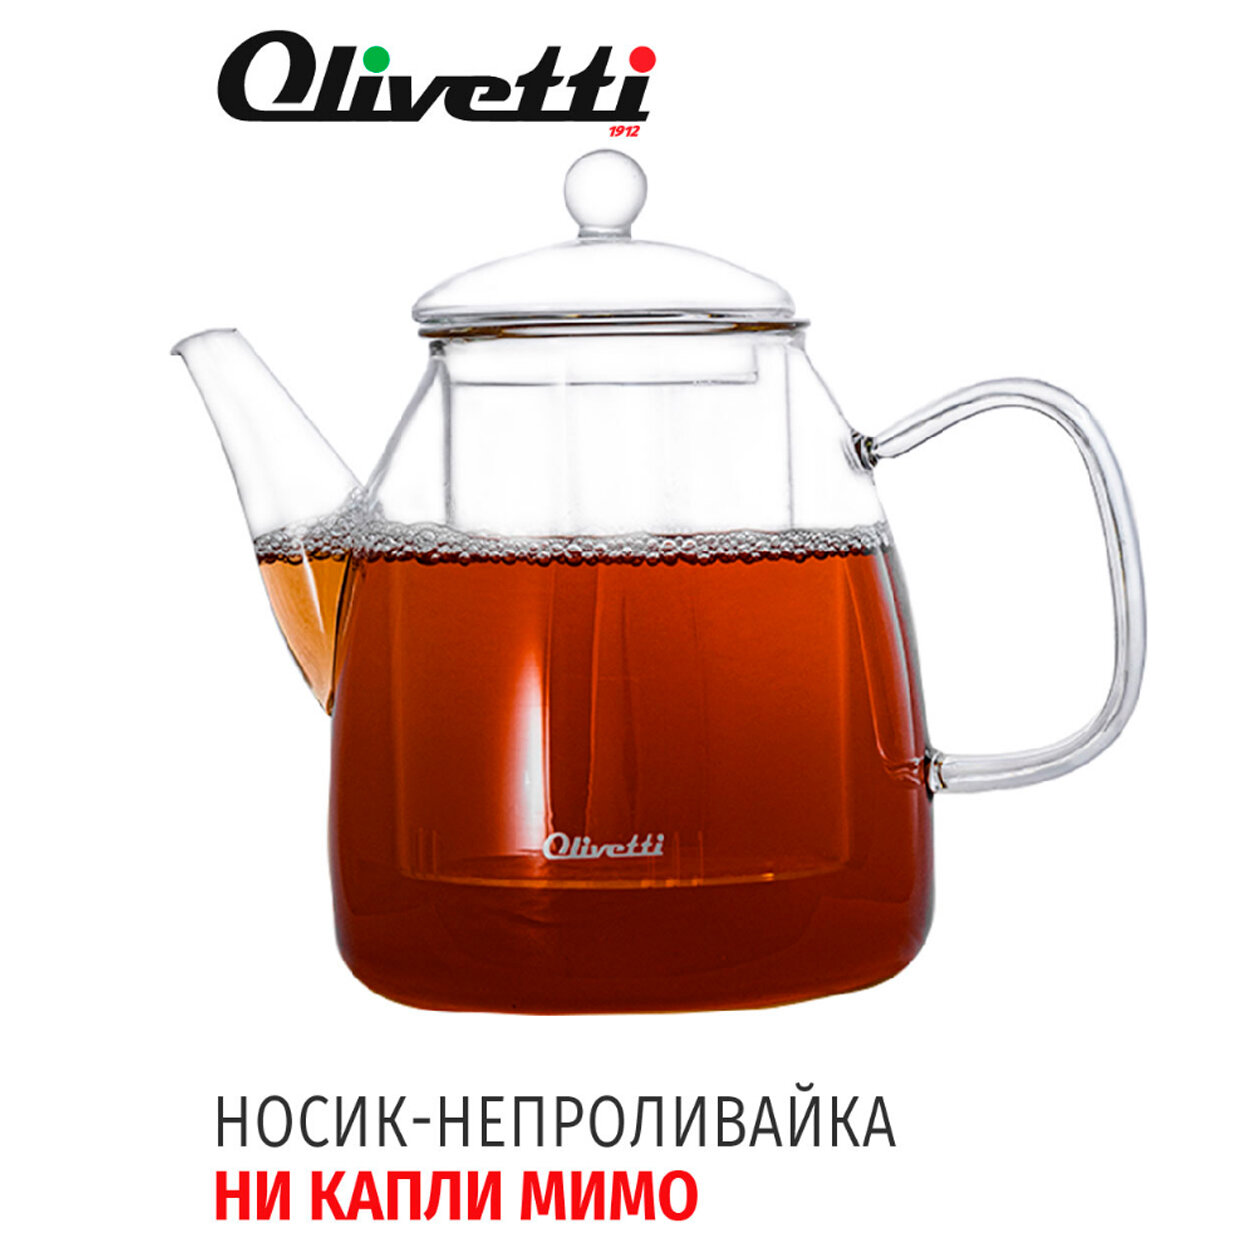 Чайник заварочный 2 в 1 Olivetti GTK123 из термостойкого боросиликатного стекла со съемным стеклянным фильтром для правильного заваривания чая, 1200 мл